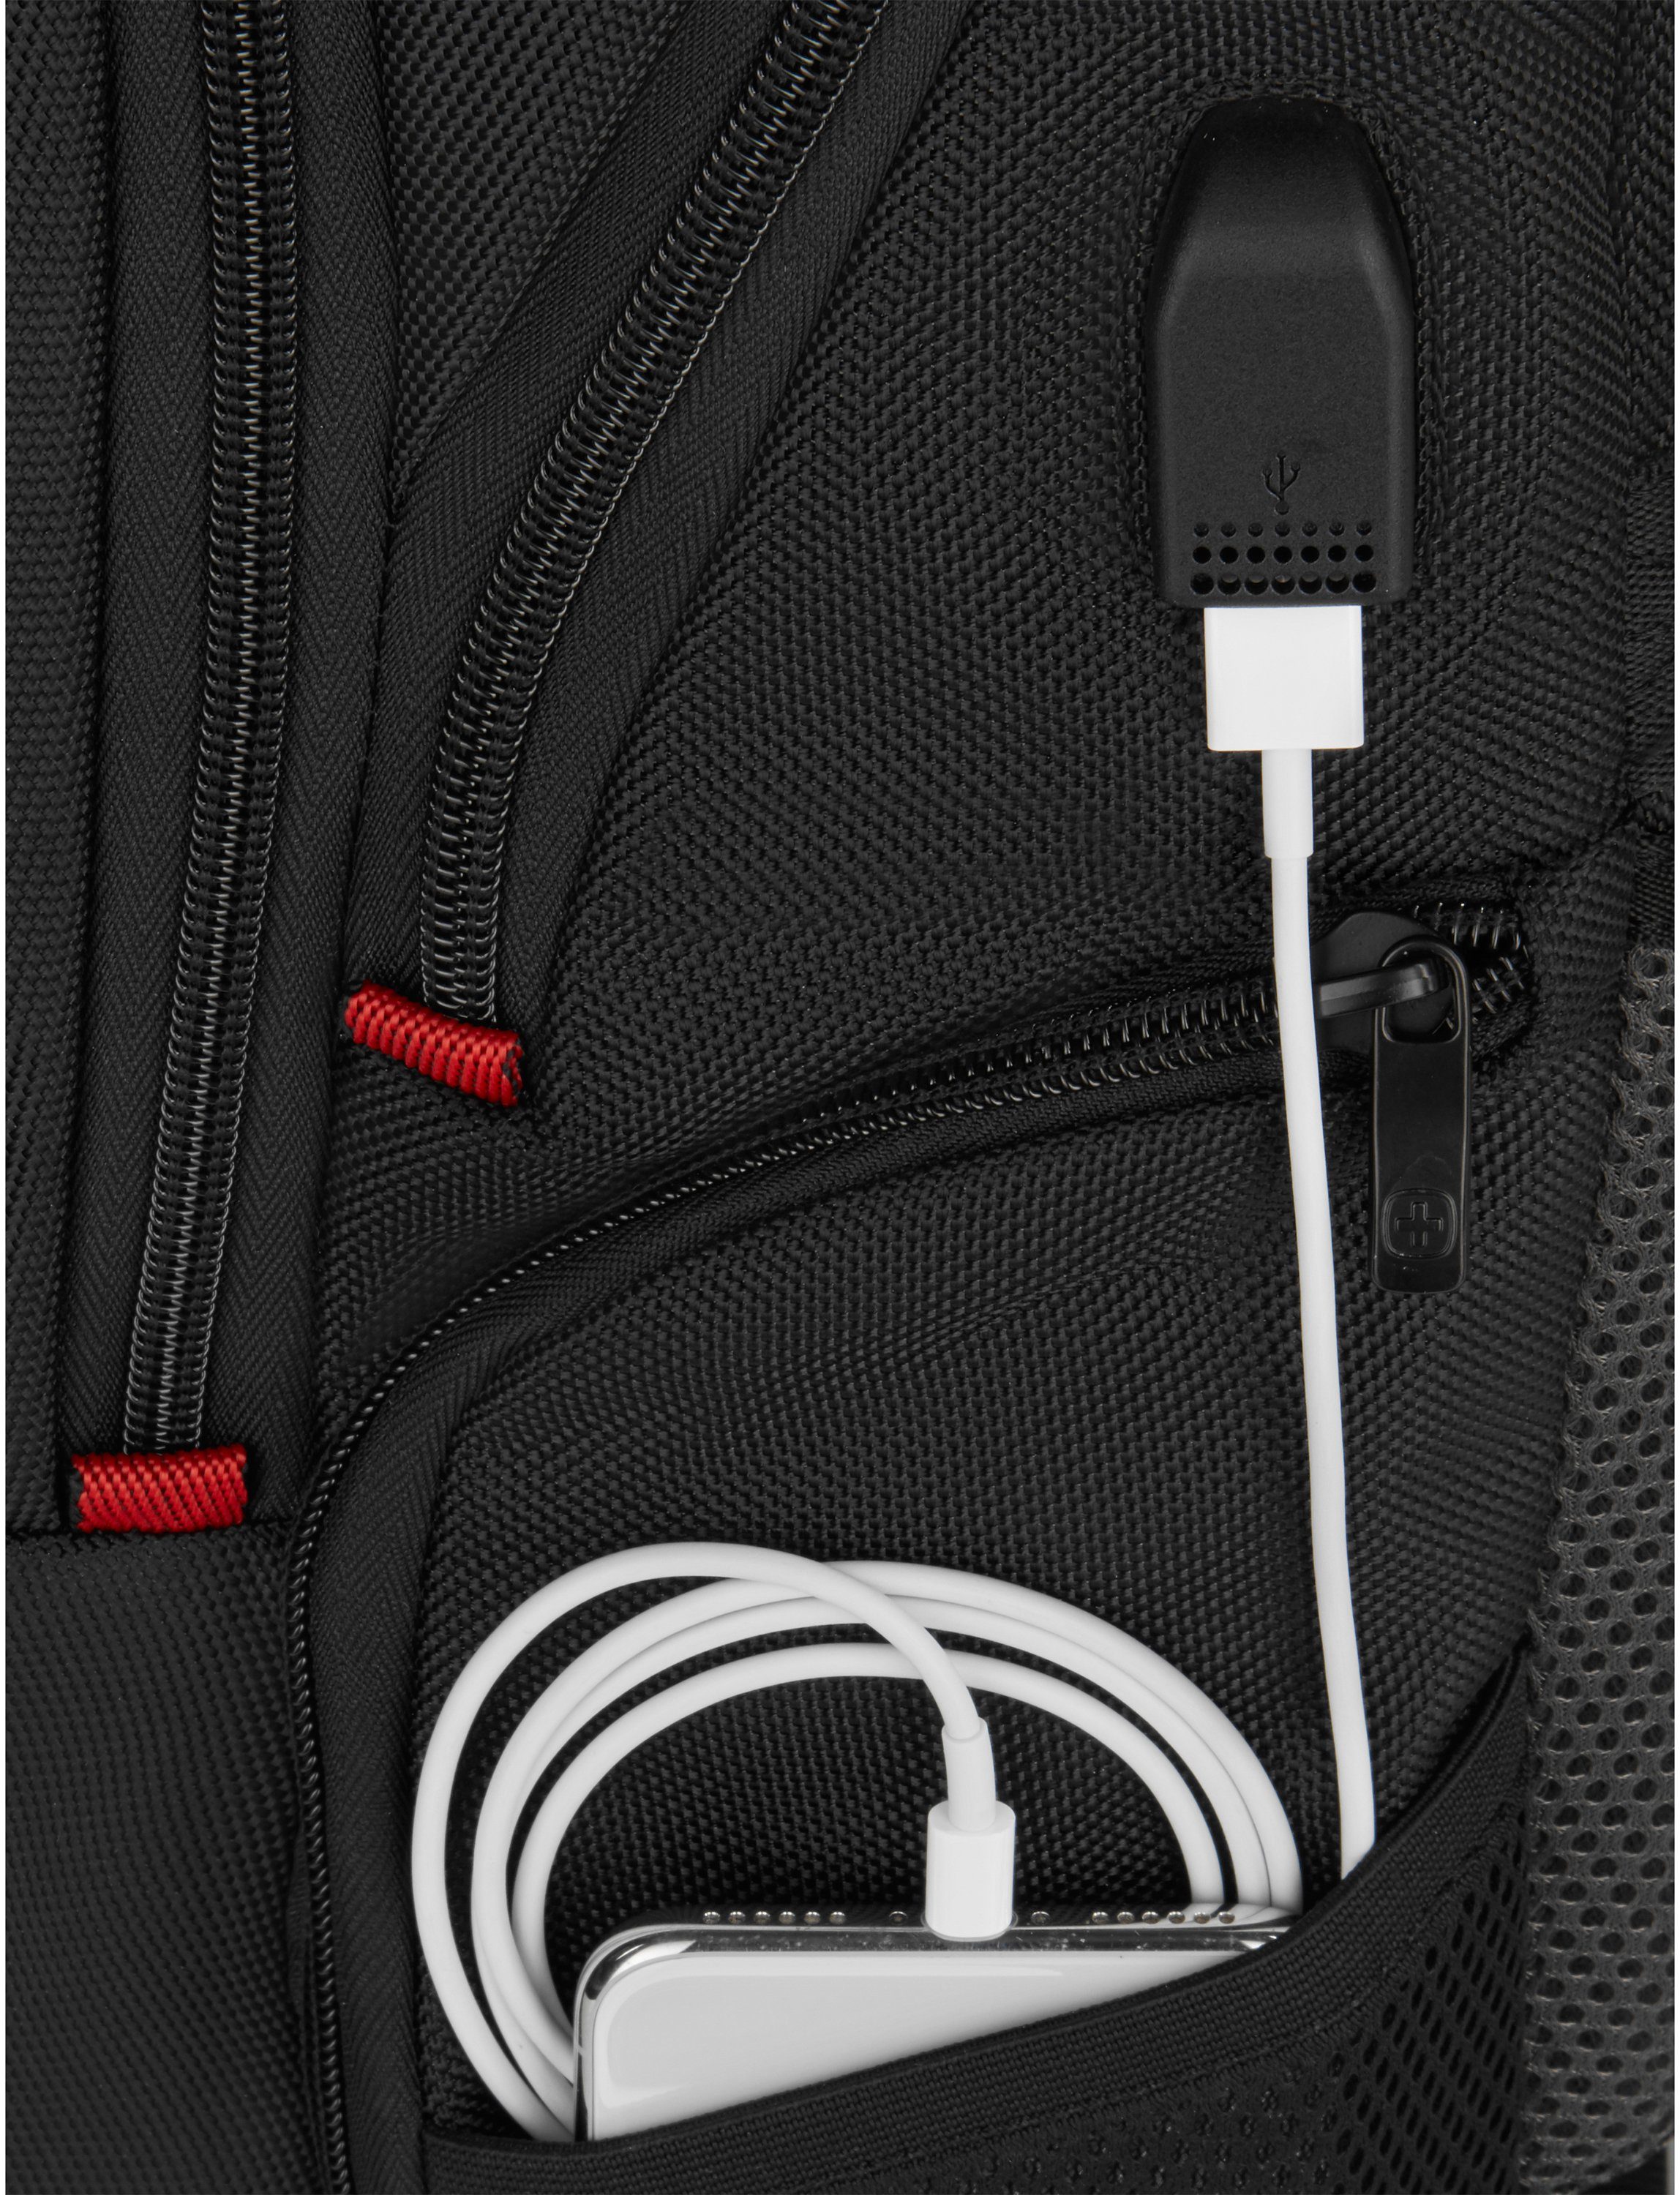 Herren Businesstaschen Wenger Laptoprucksack Pegasus Deluxe, schwarz, für Laptops bis 16 Zoll inkl. USB-Schleuse